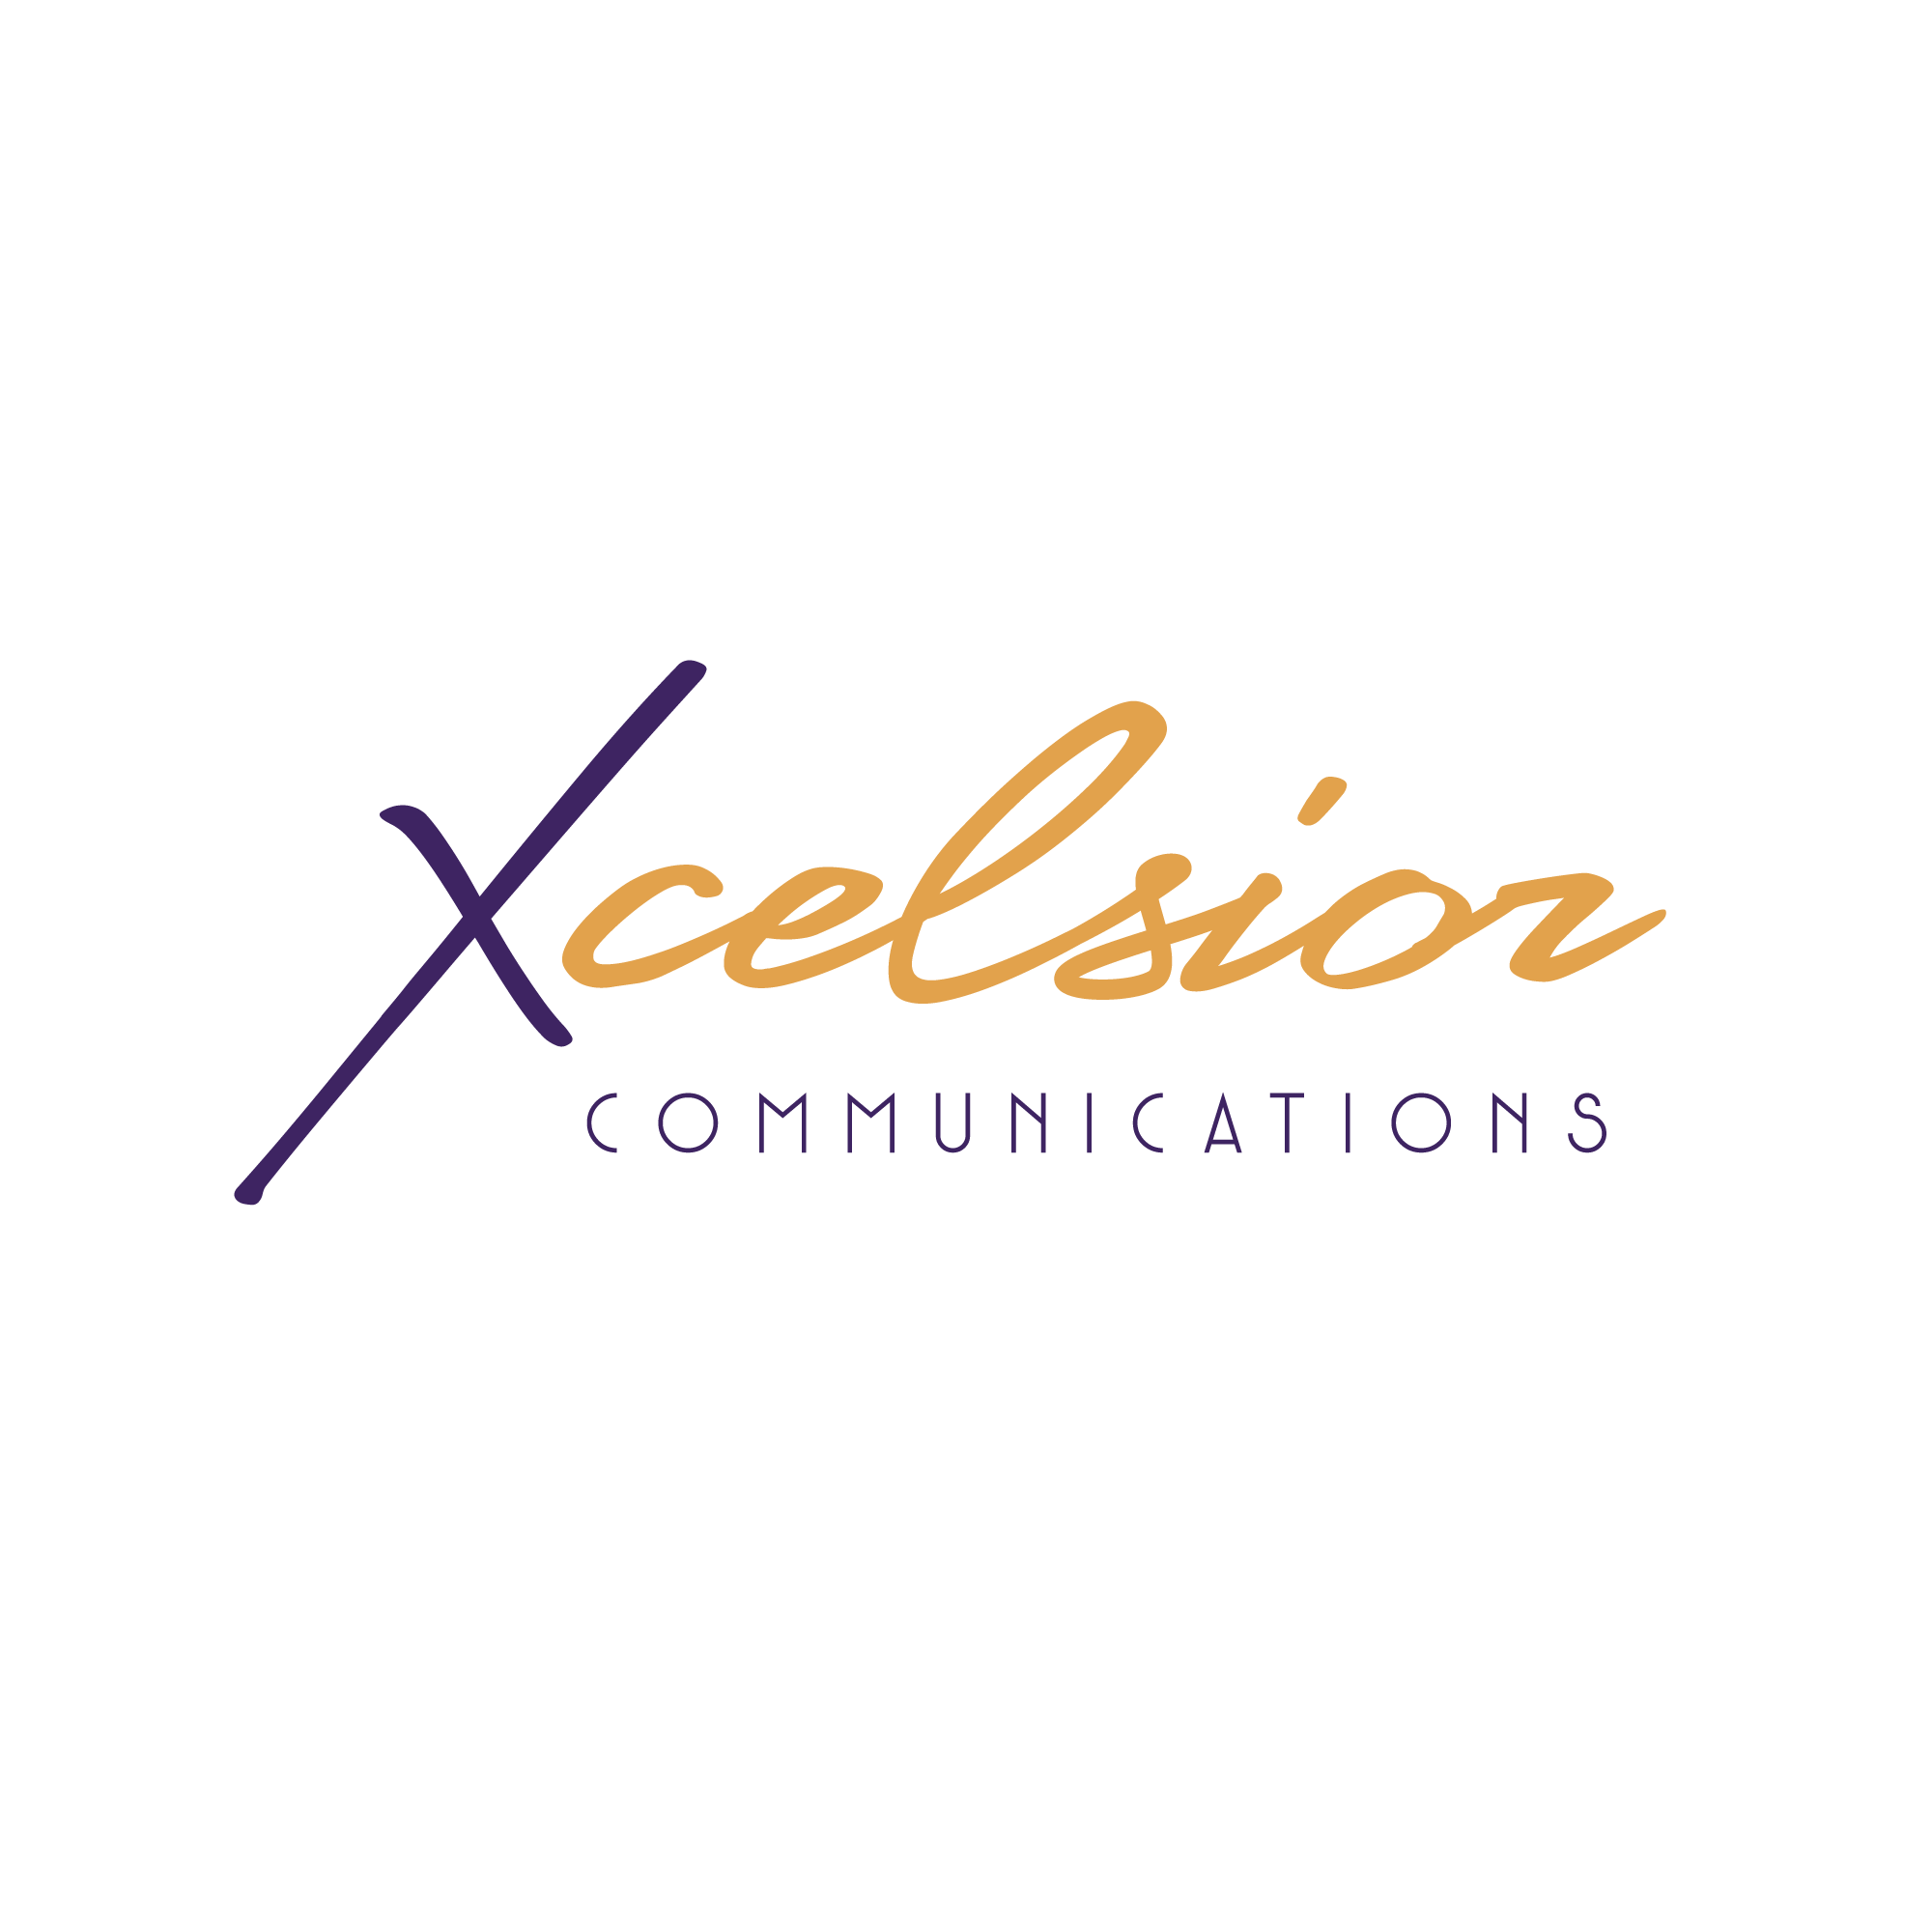 Xcelsior Communications